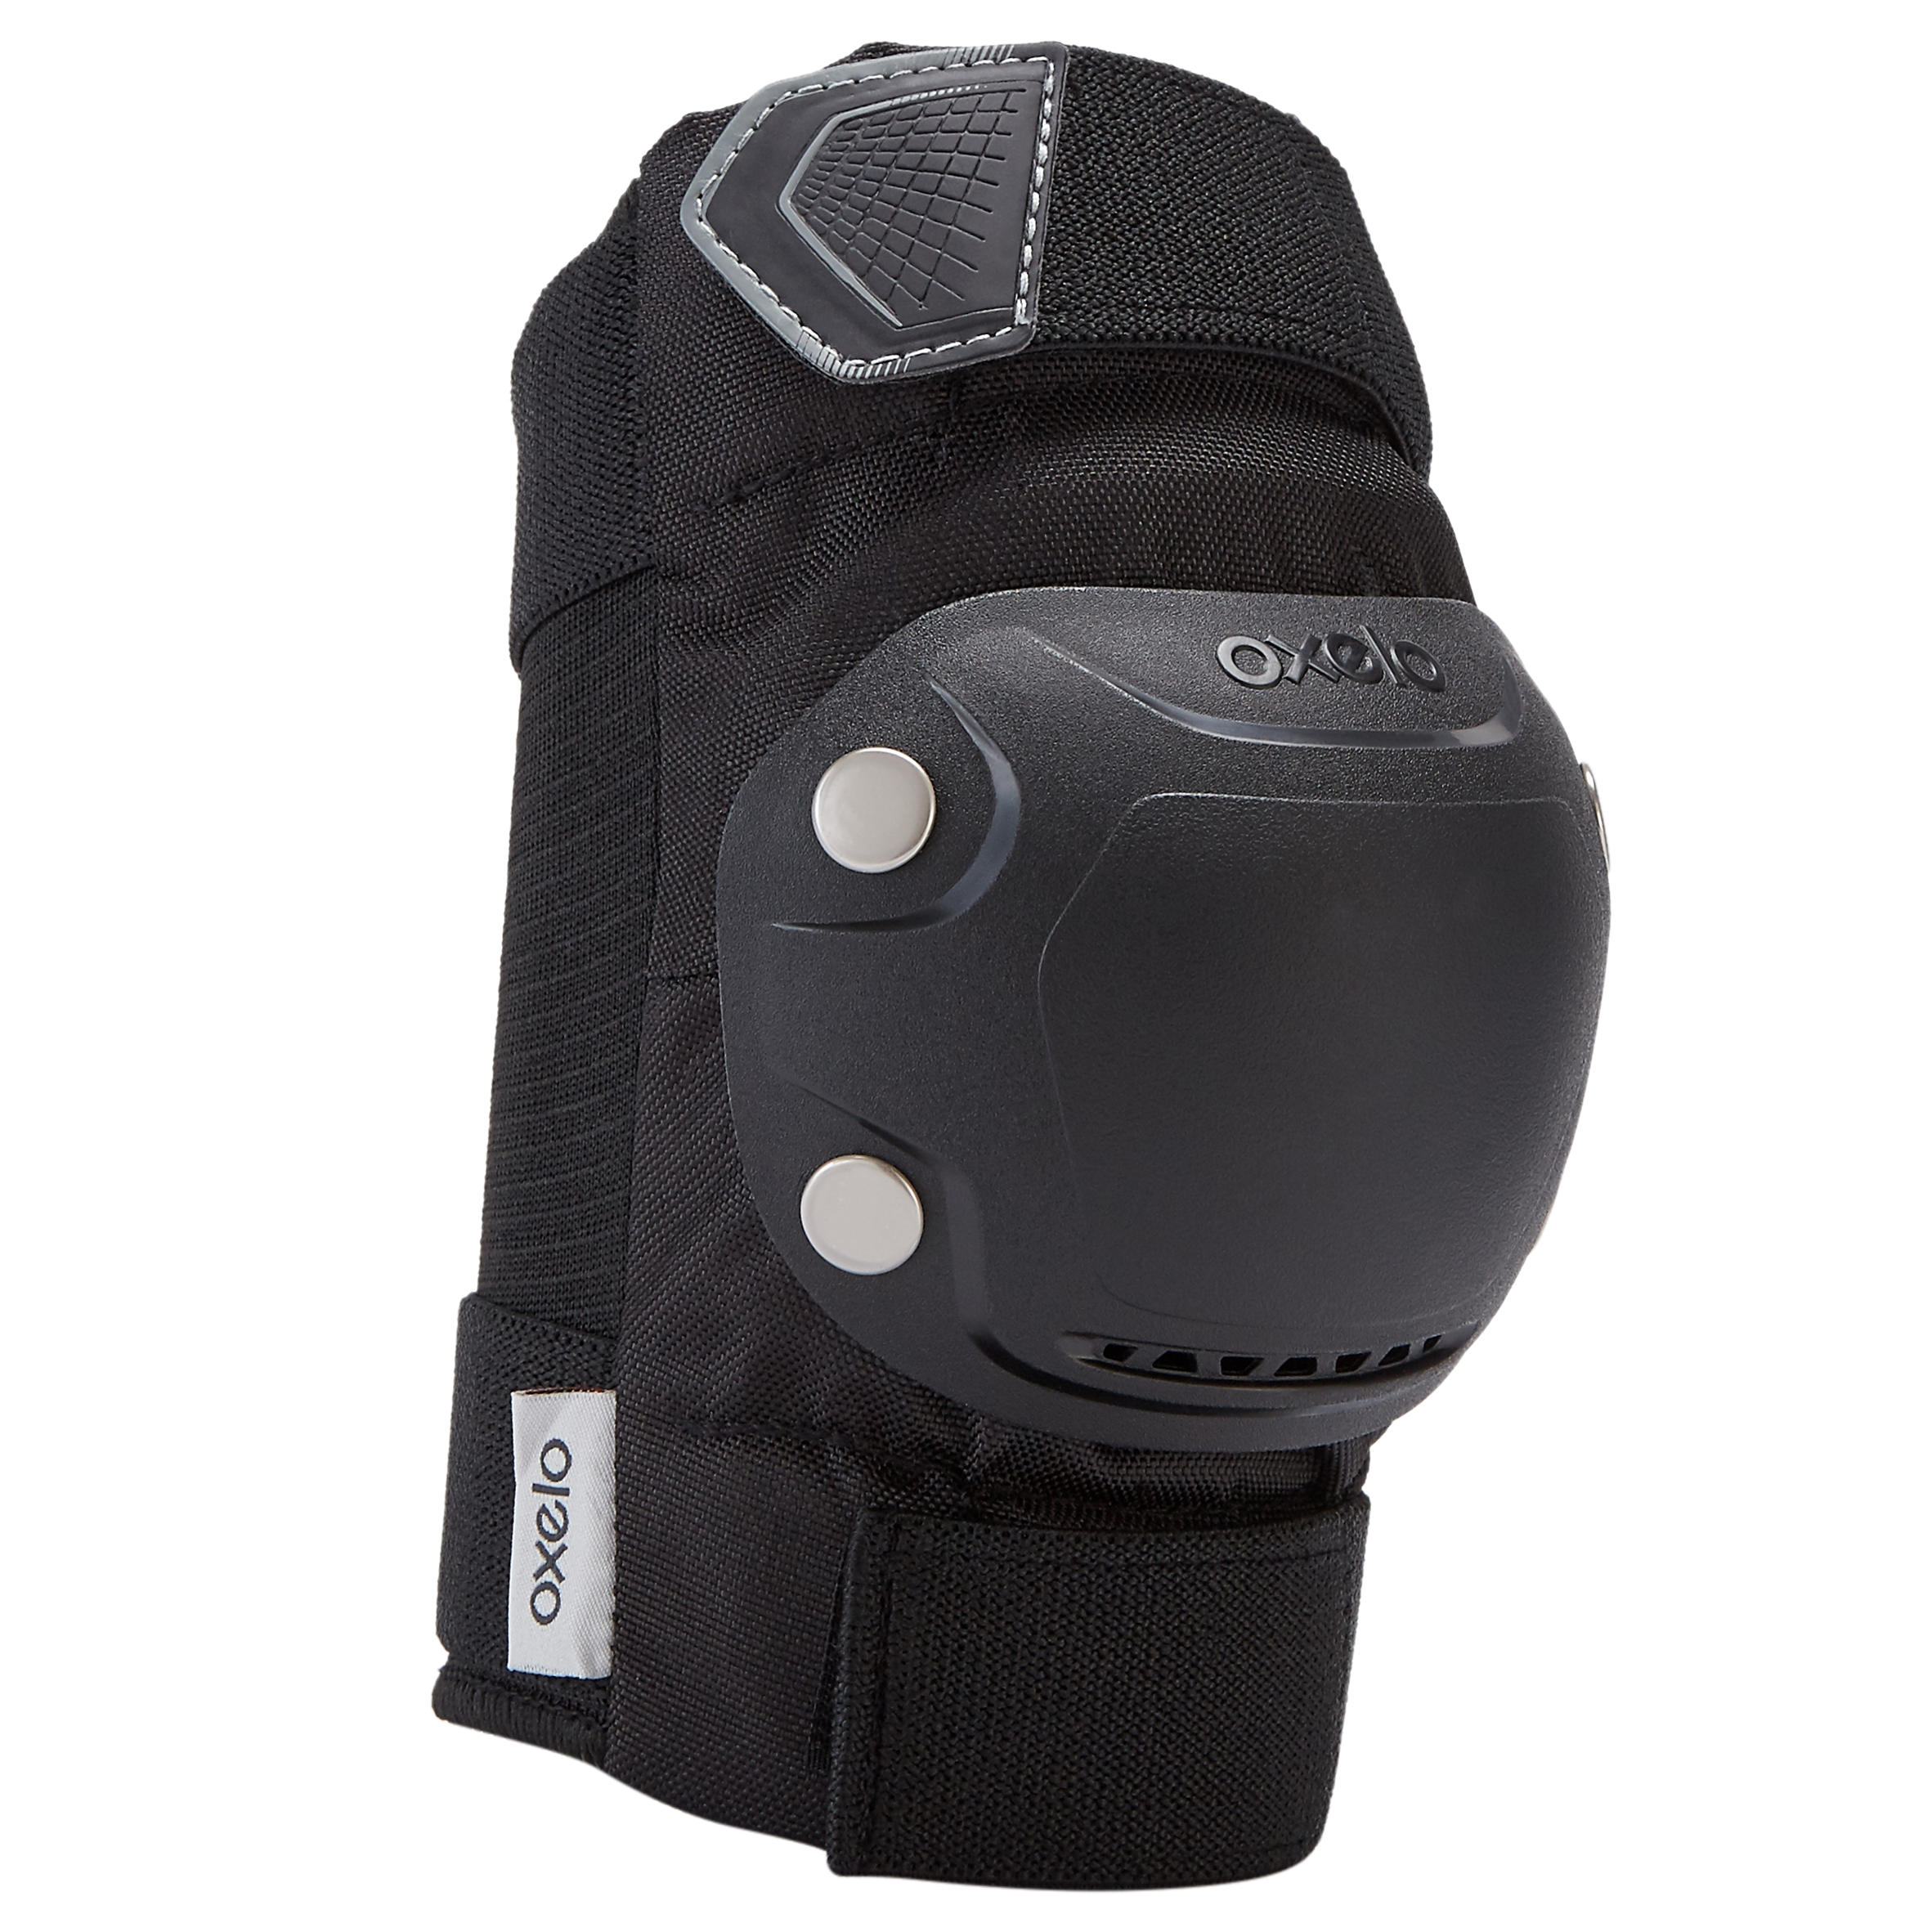 Protections corporelles pour patins à roues alignées - FIT500 noir/gris - OXELO